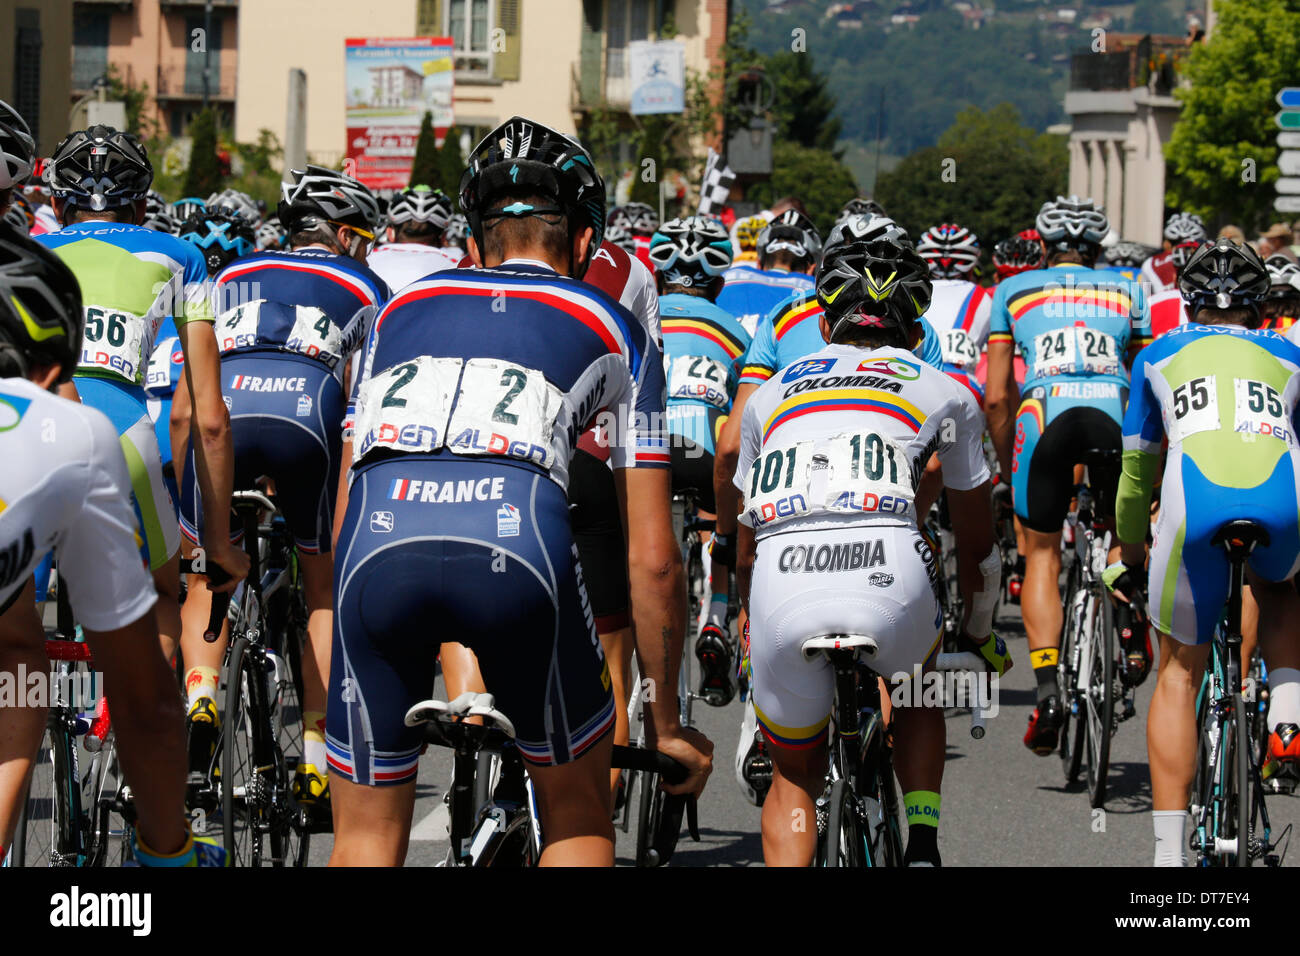 Tour del futuro : un camino francés de carreras de bicicleta de carrera por etapas. Foto de stock